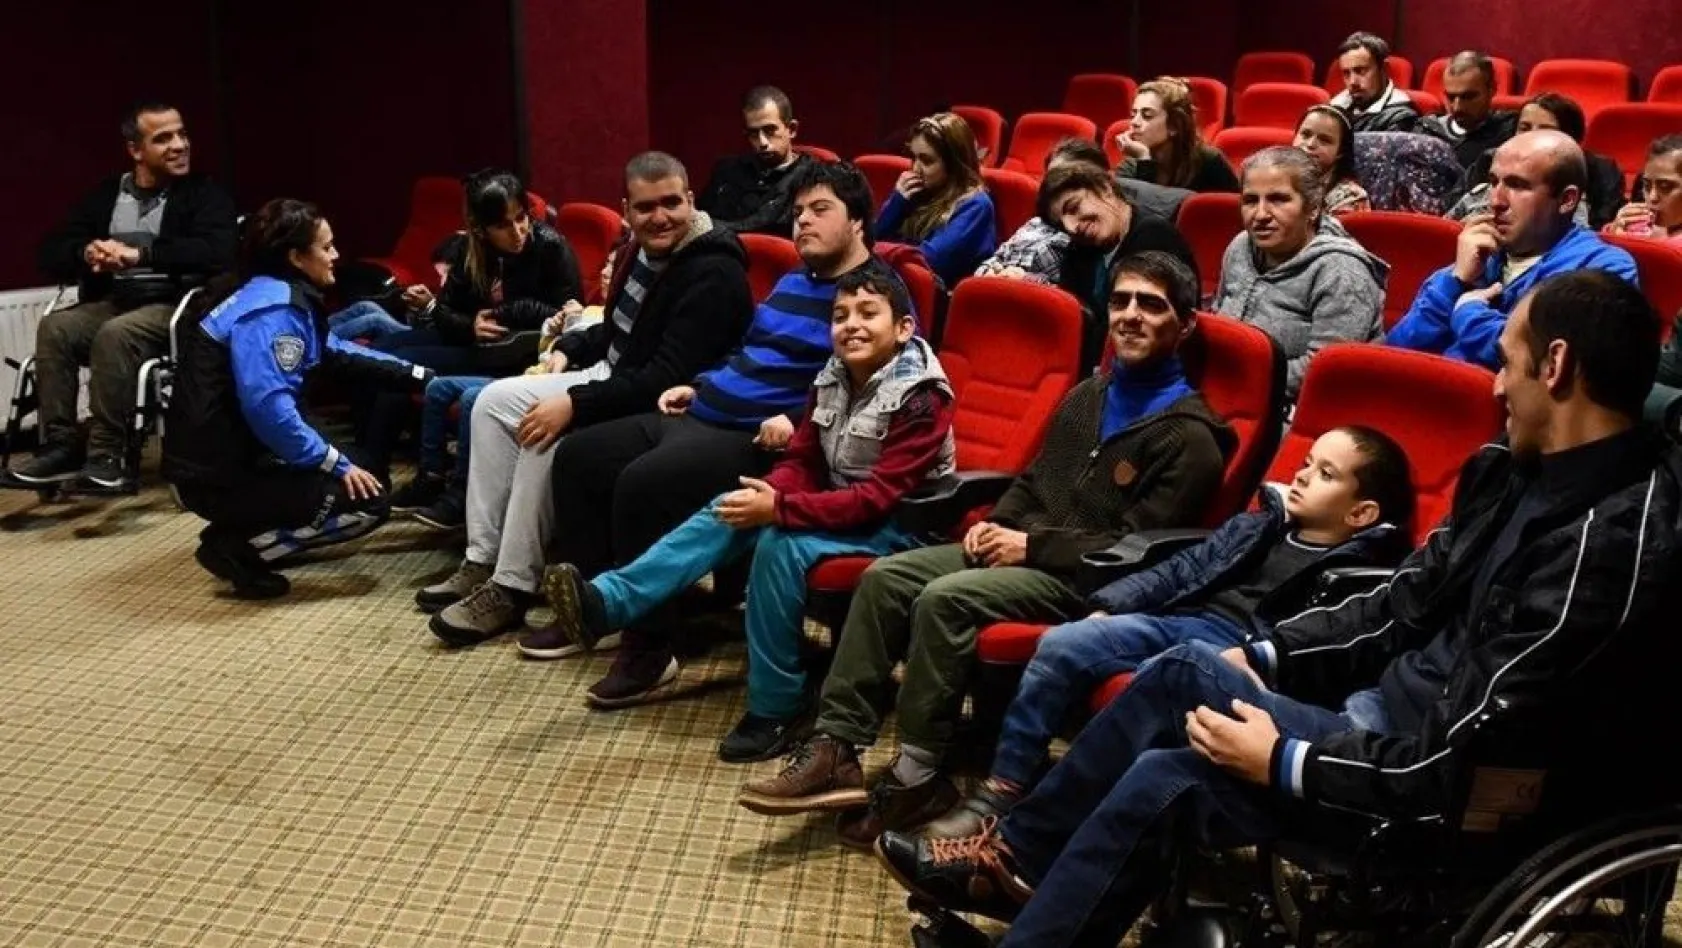 Tunceli'de 'Hatırlanmak Bir Gün Değil Her Gün' projesi
